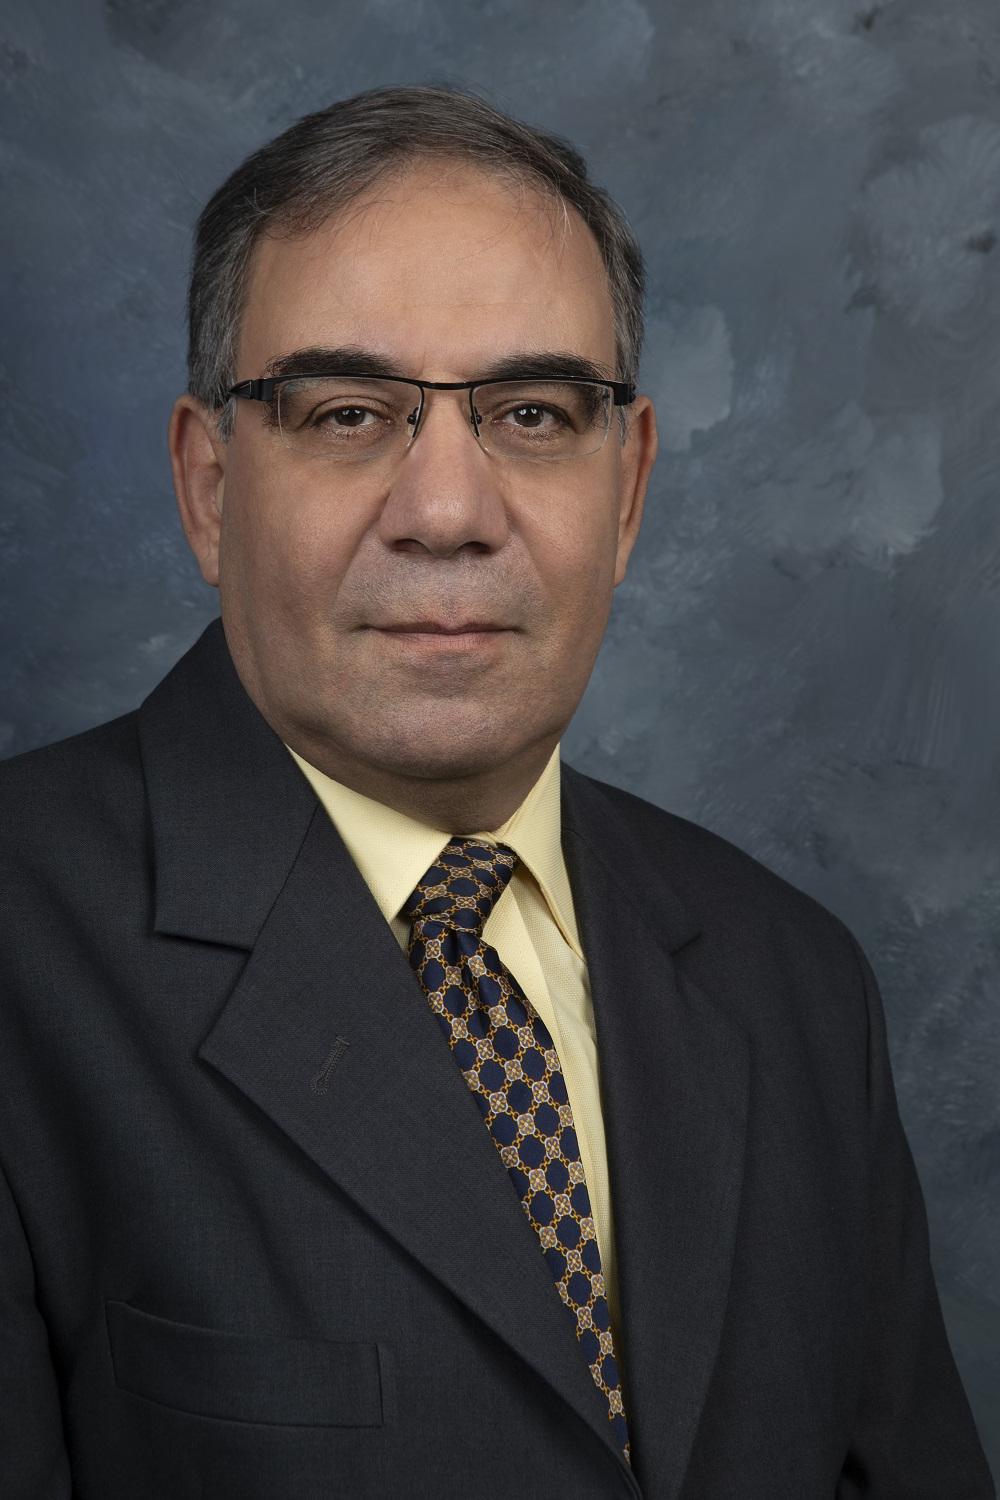 Dr. El-Sharkh